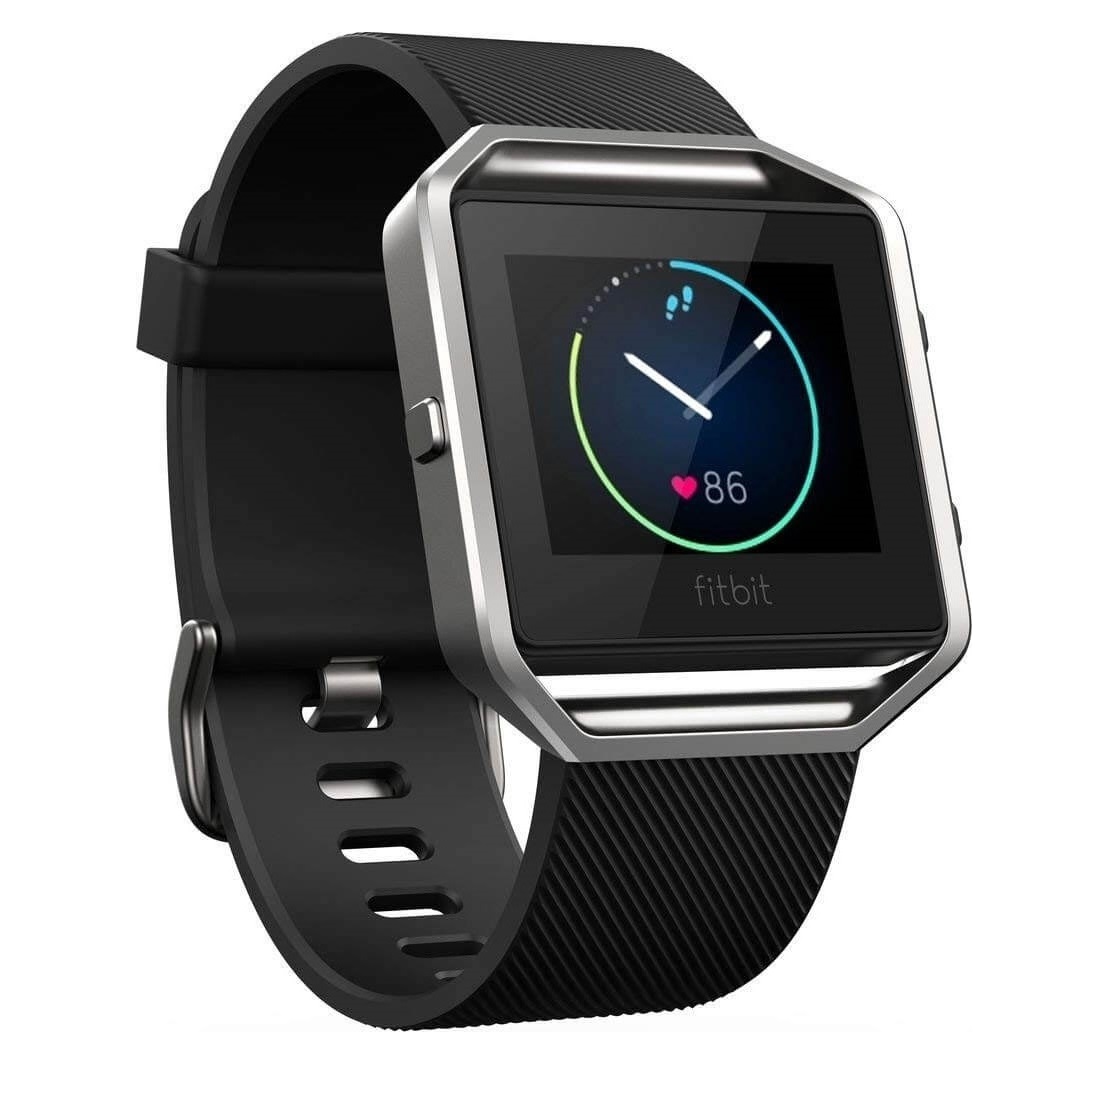 Умные часы Fitbit Blaze, серебристый/черный цена и фото